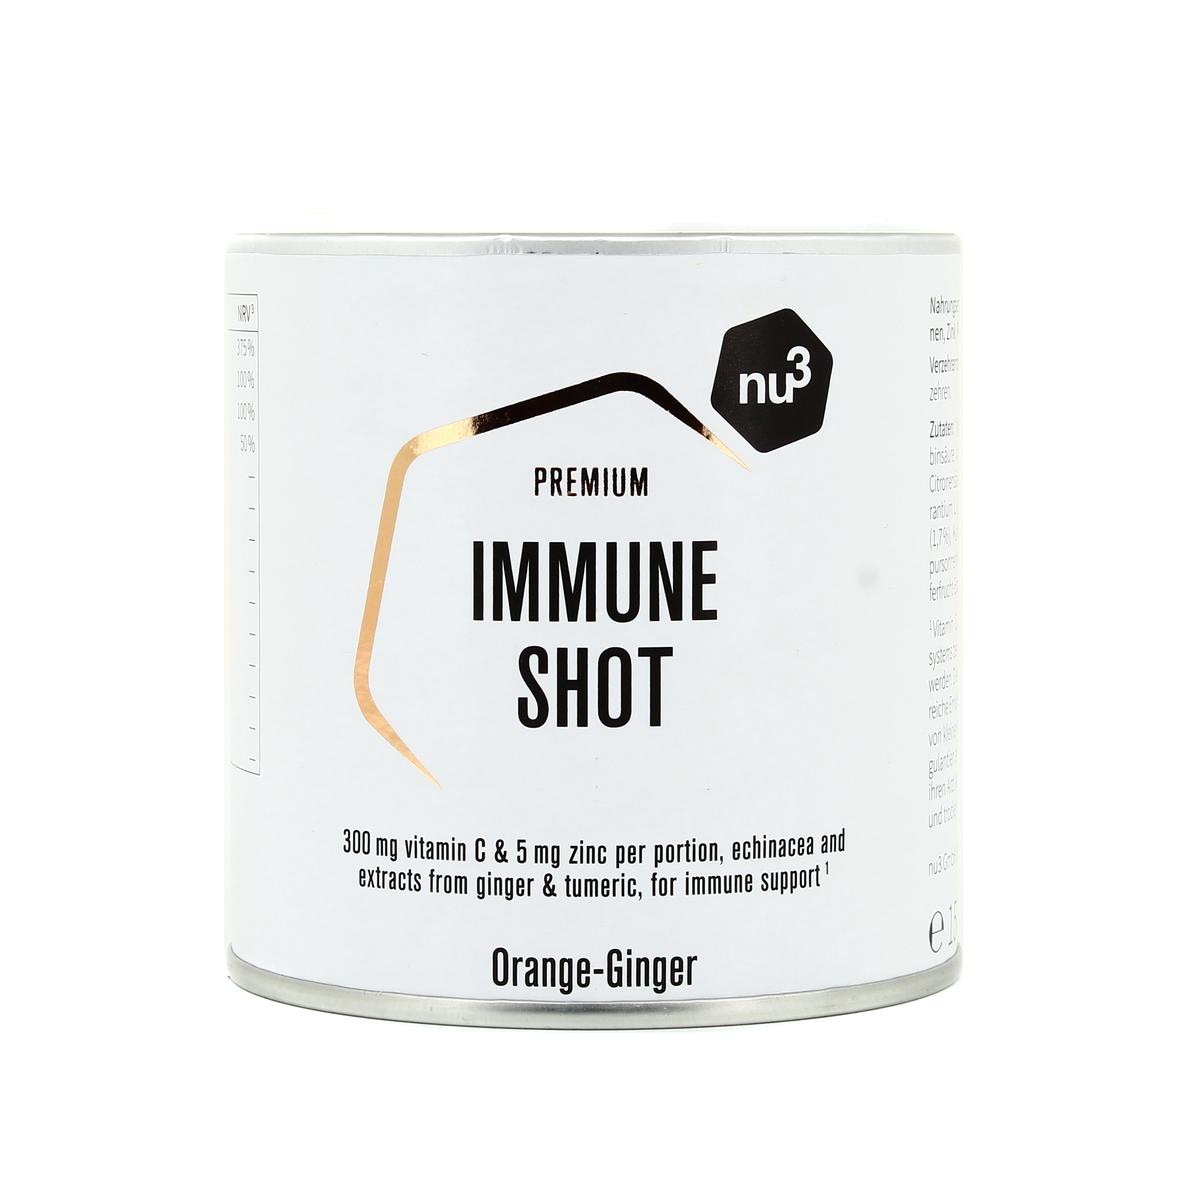 Livraison à domicile Promotion NU3 Immune shot - Orange Gingembre, 150g